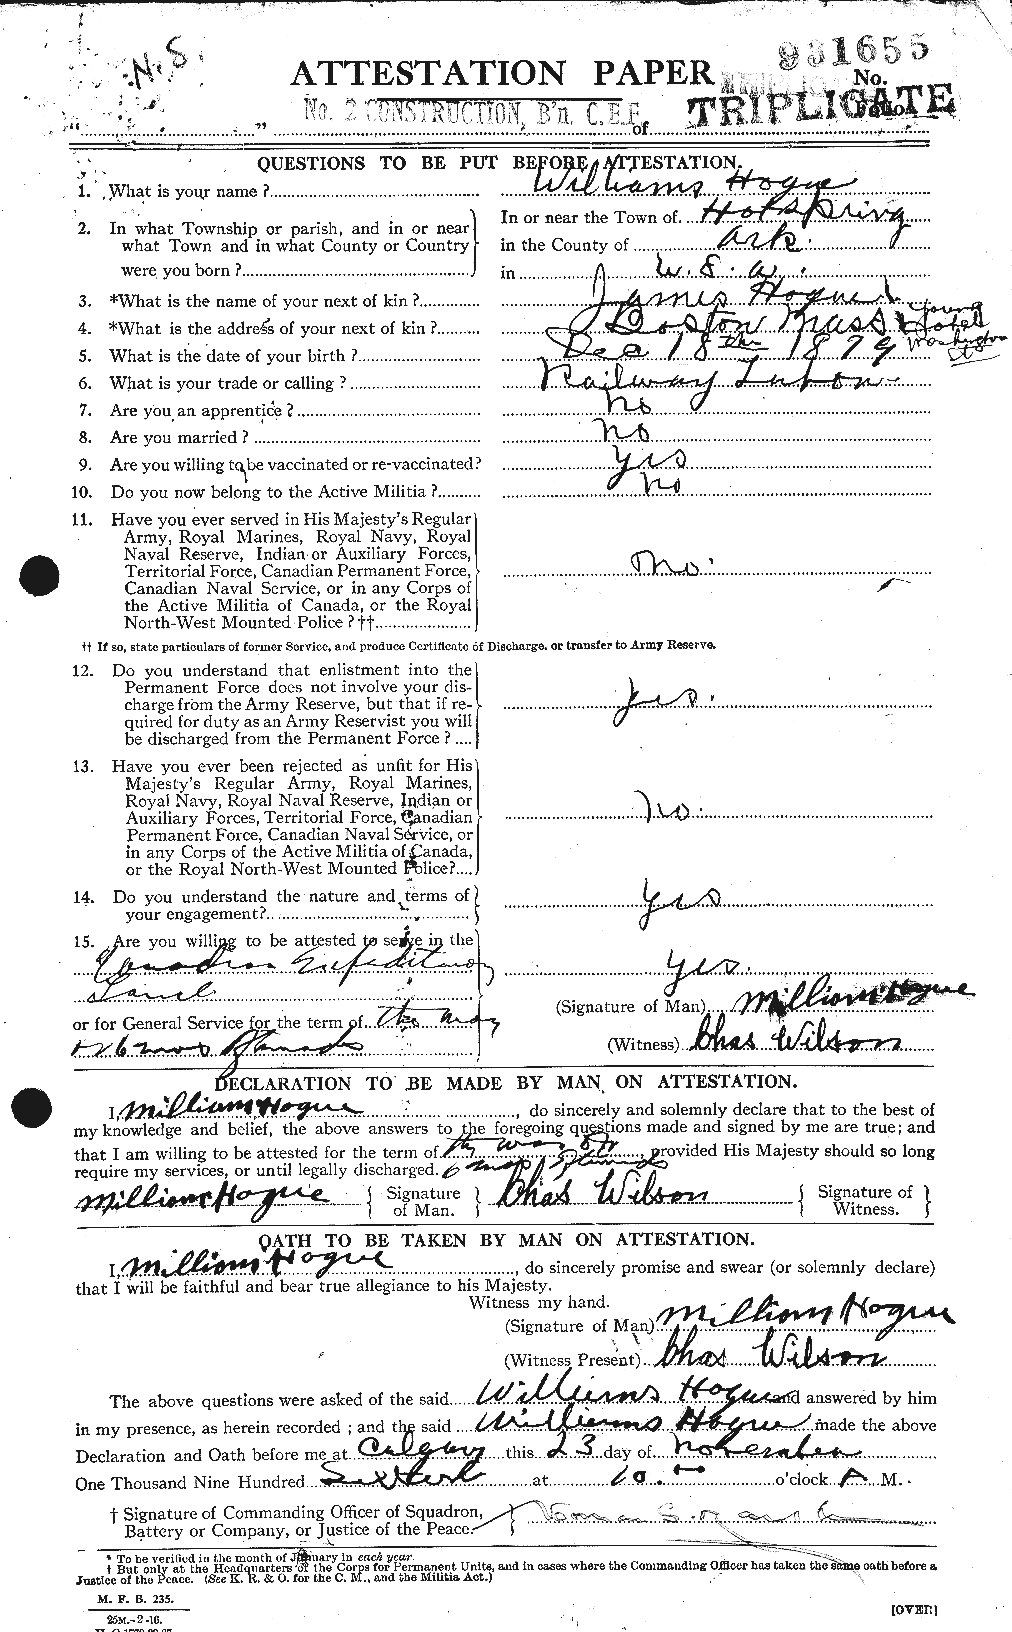 Dossiers du Personnel de la Première Guerre mondiale - CEC 396538a